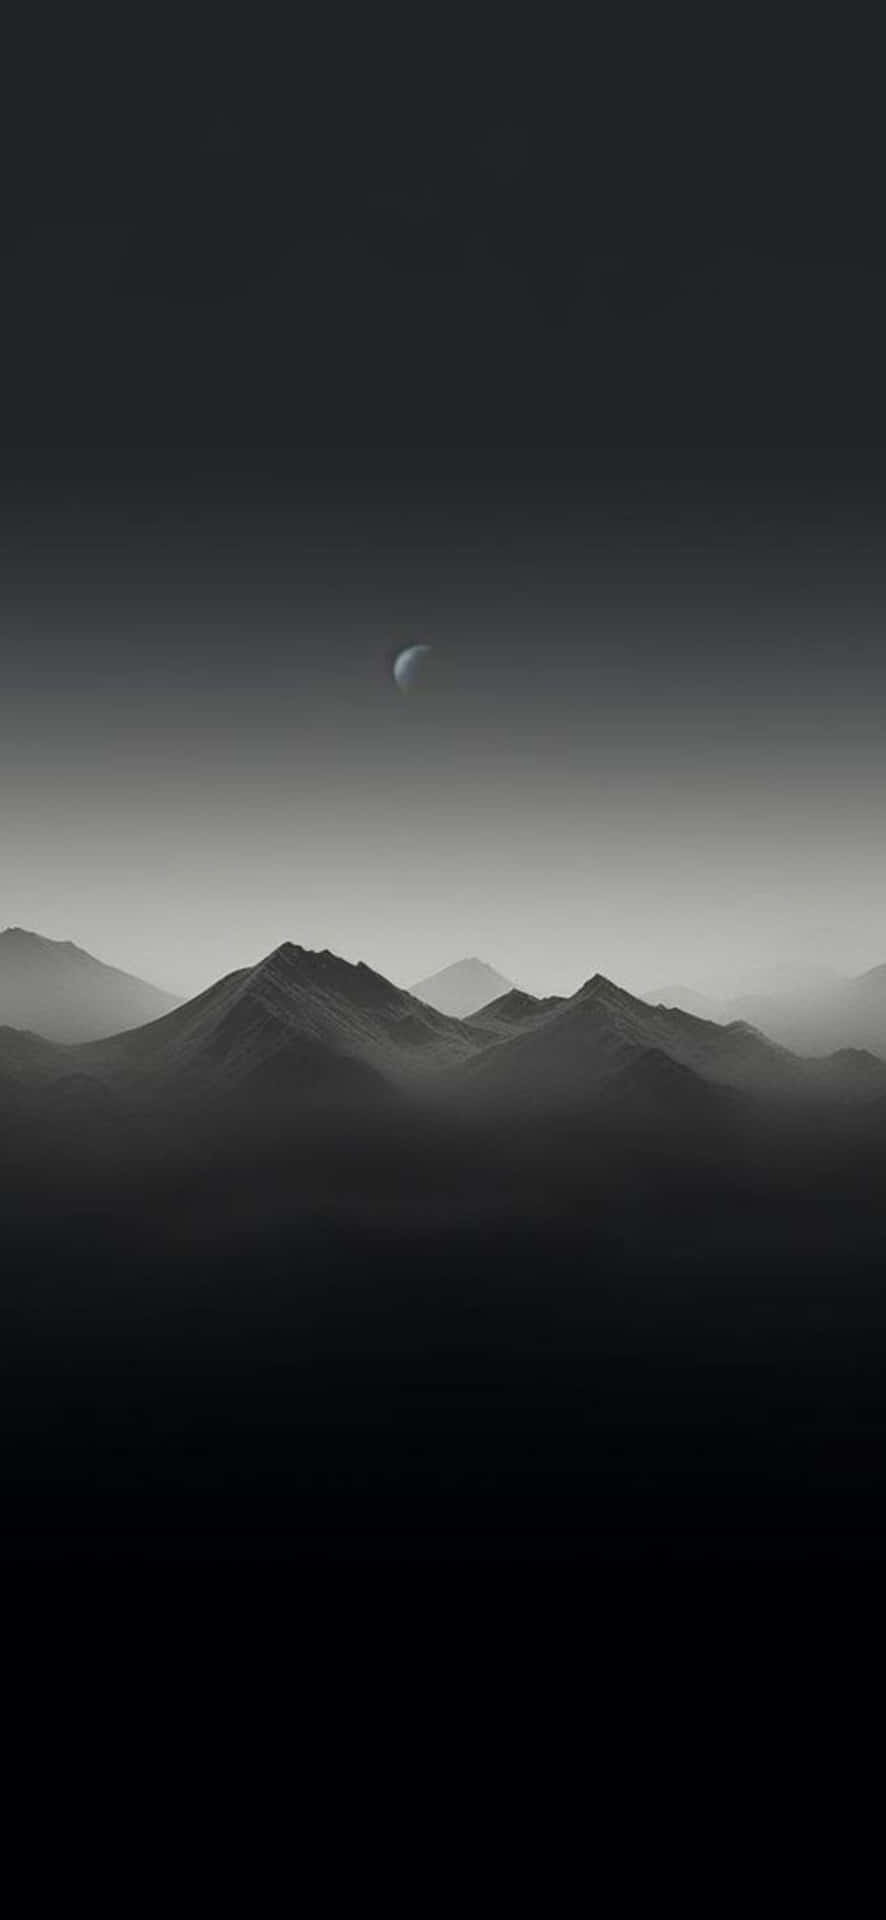 Monochrome_ Mountainous_ Landscape_with_ Crescent_ Moon Wallpaper